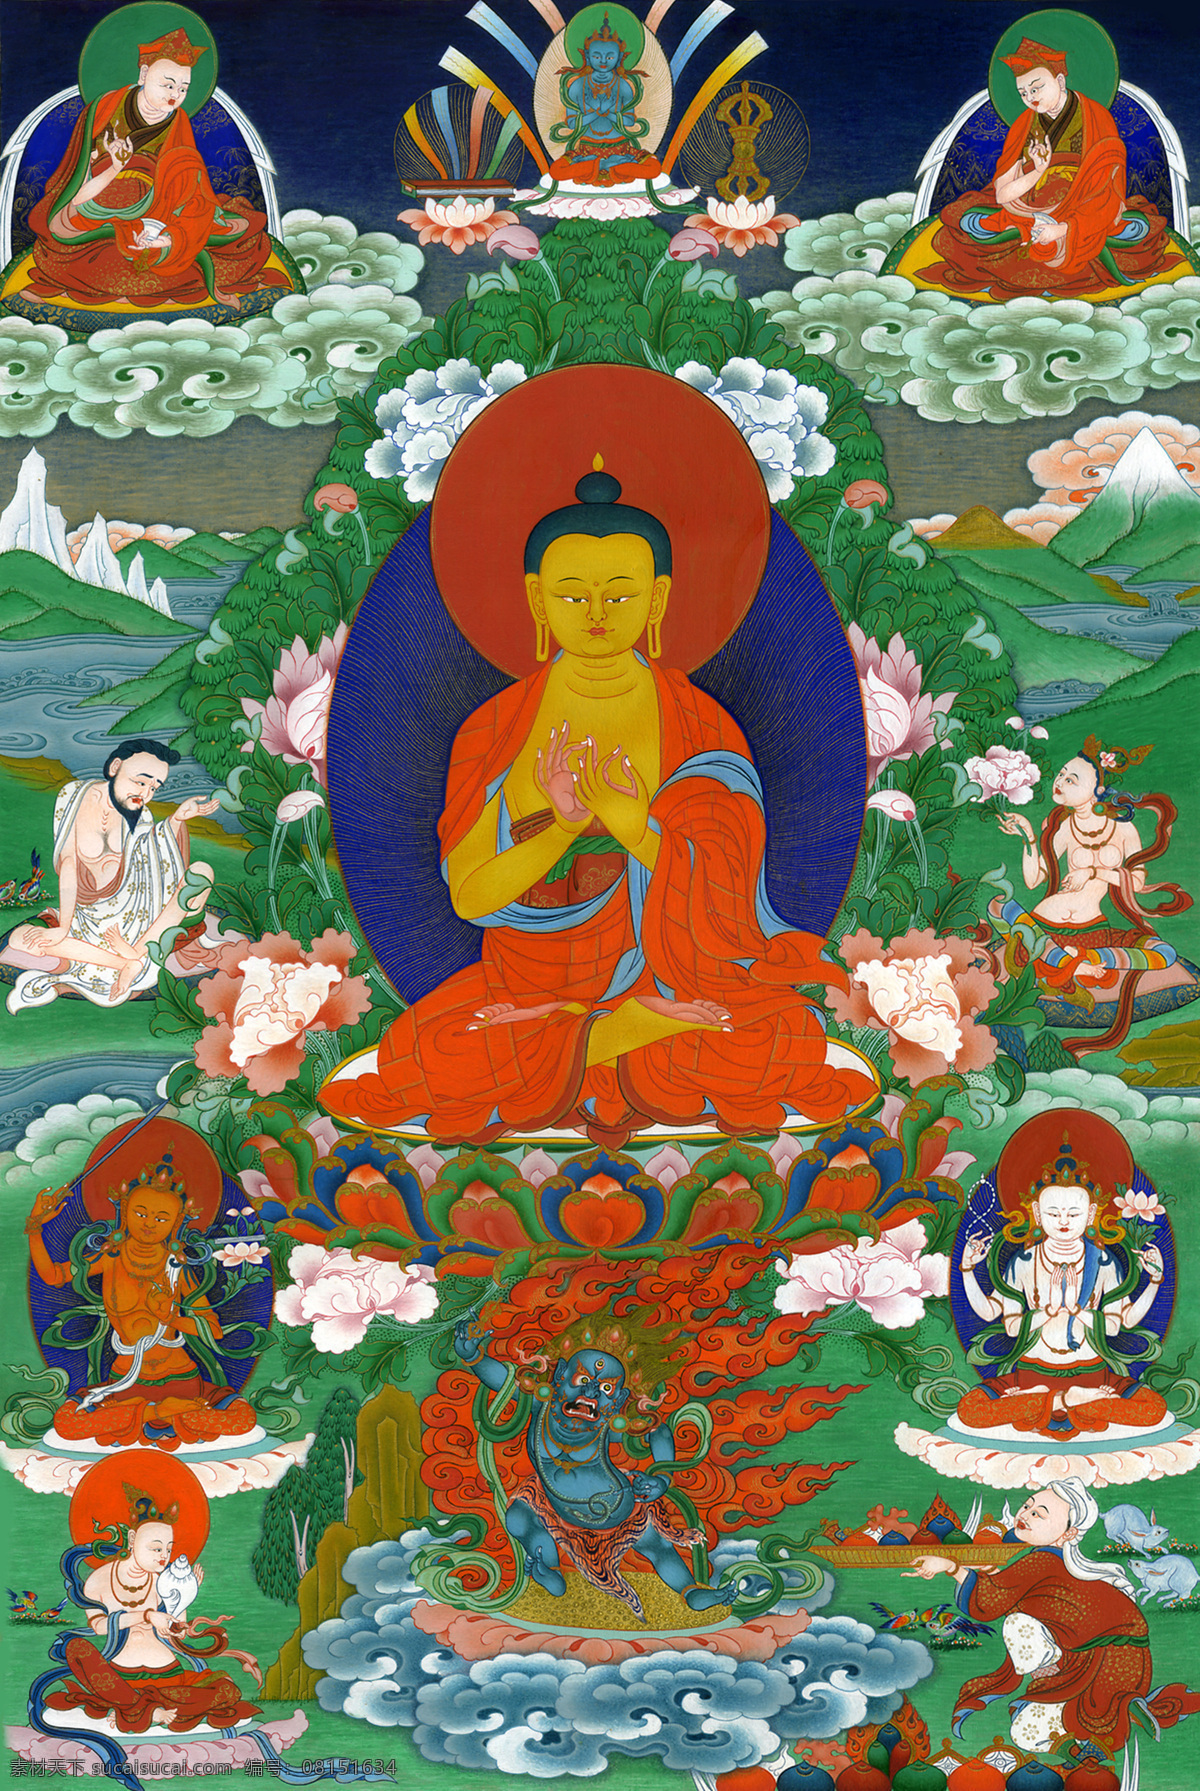 唐卡 佛教 藏传佛教 佛 宗教 宗教信仰 菩萨 西藏 民族 工艺 花纹 释迦牟尼 绘画 艺术 绘画书法 文化艺术